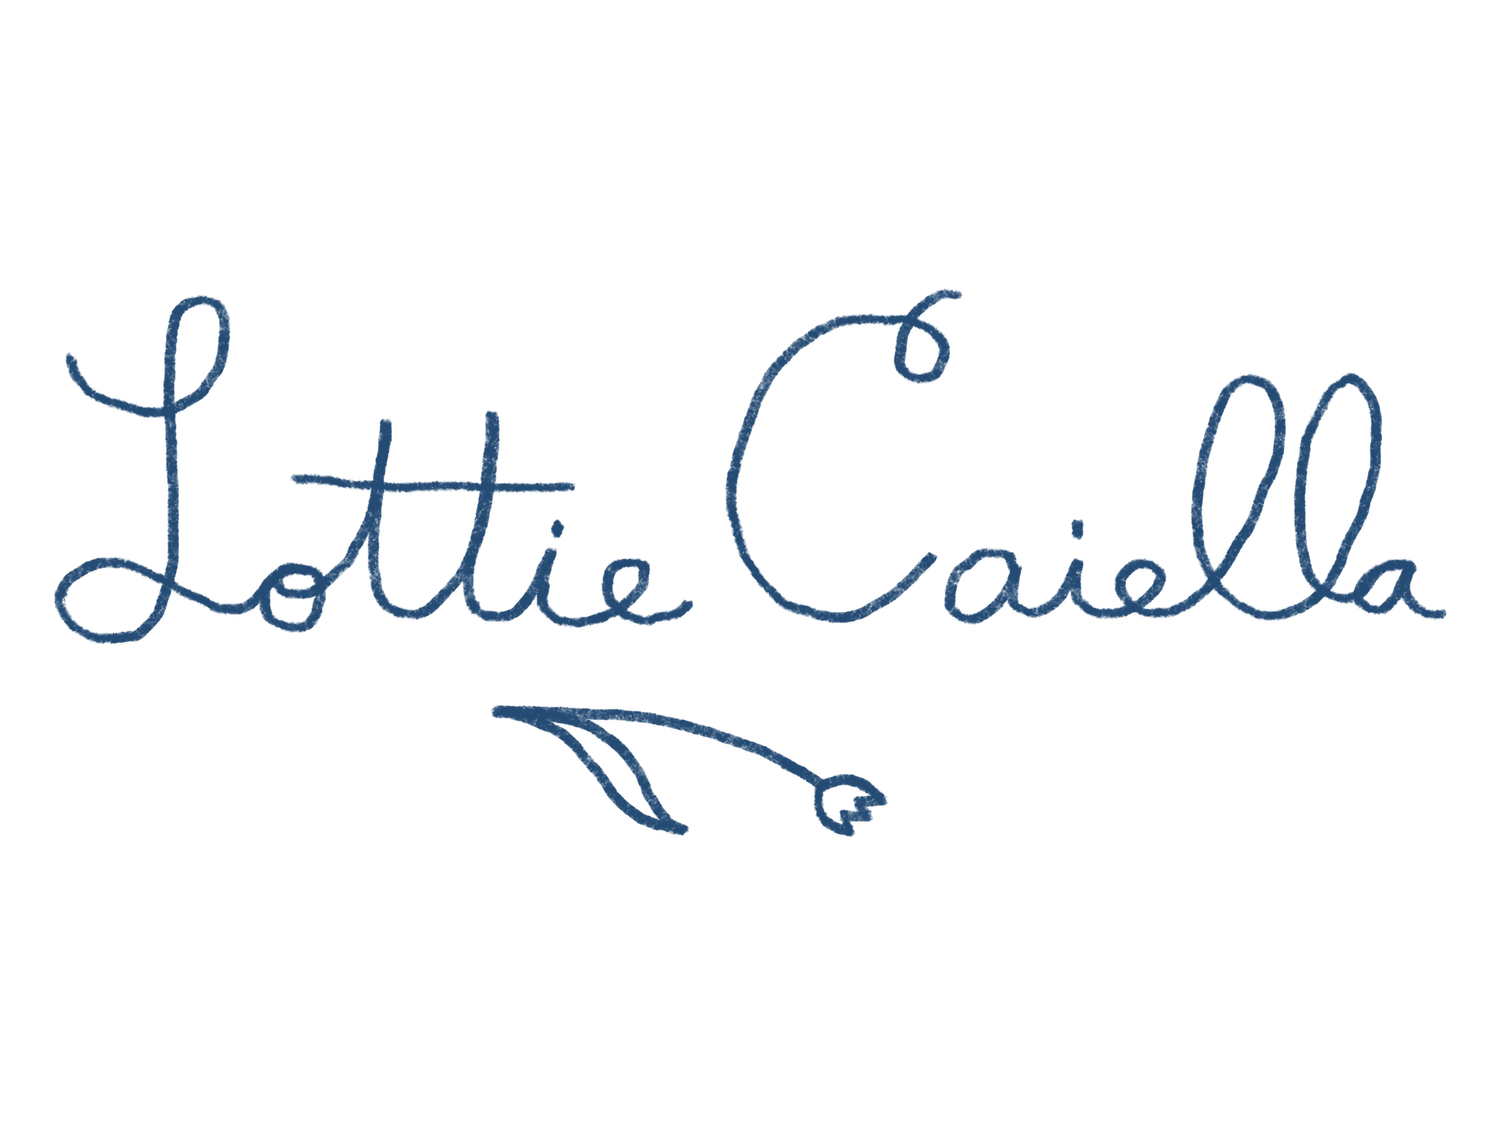 Lottie Caiella